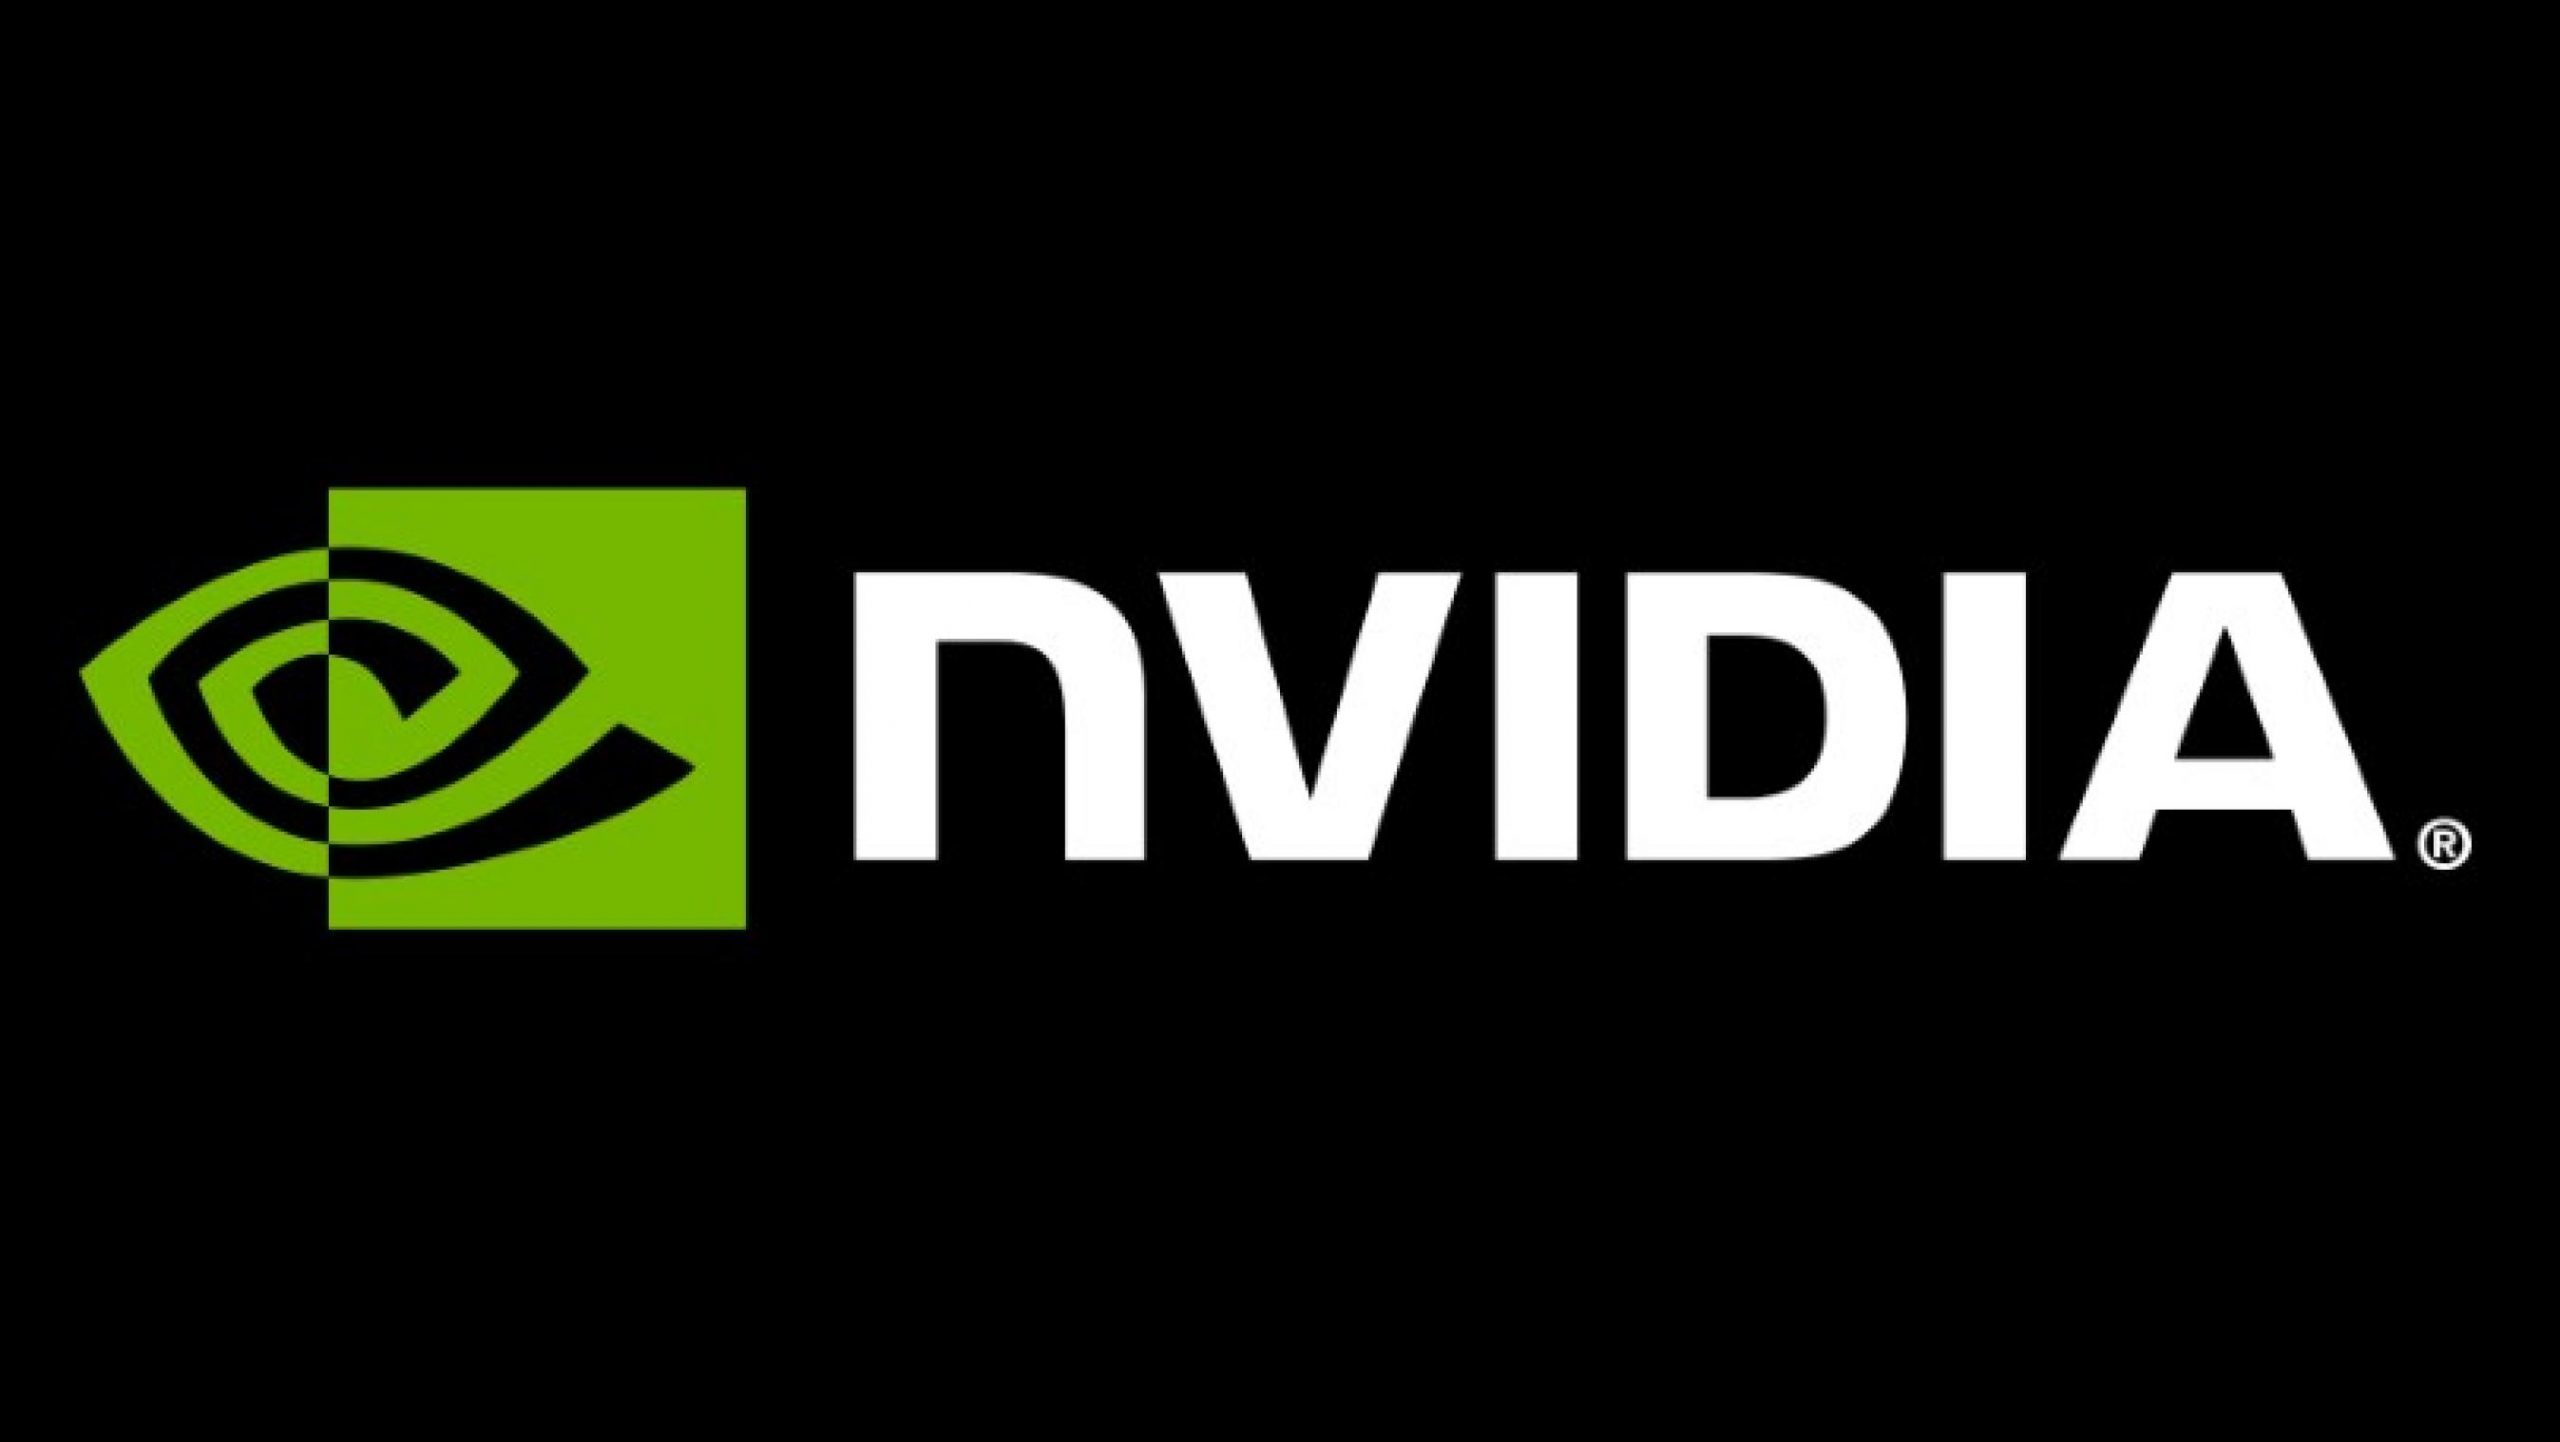 Nvidia va lansata o versiune mai lentă a cipului său pentru jocuri video în China